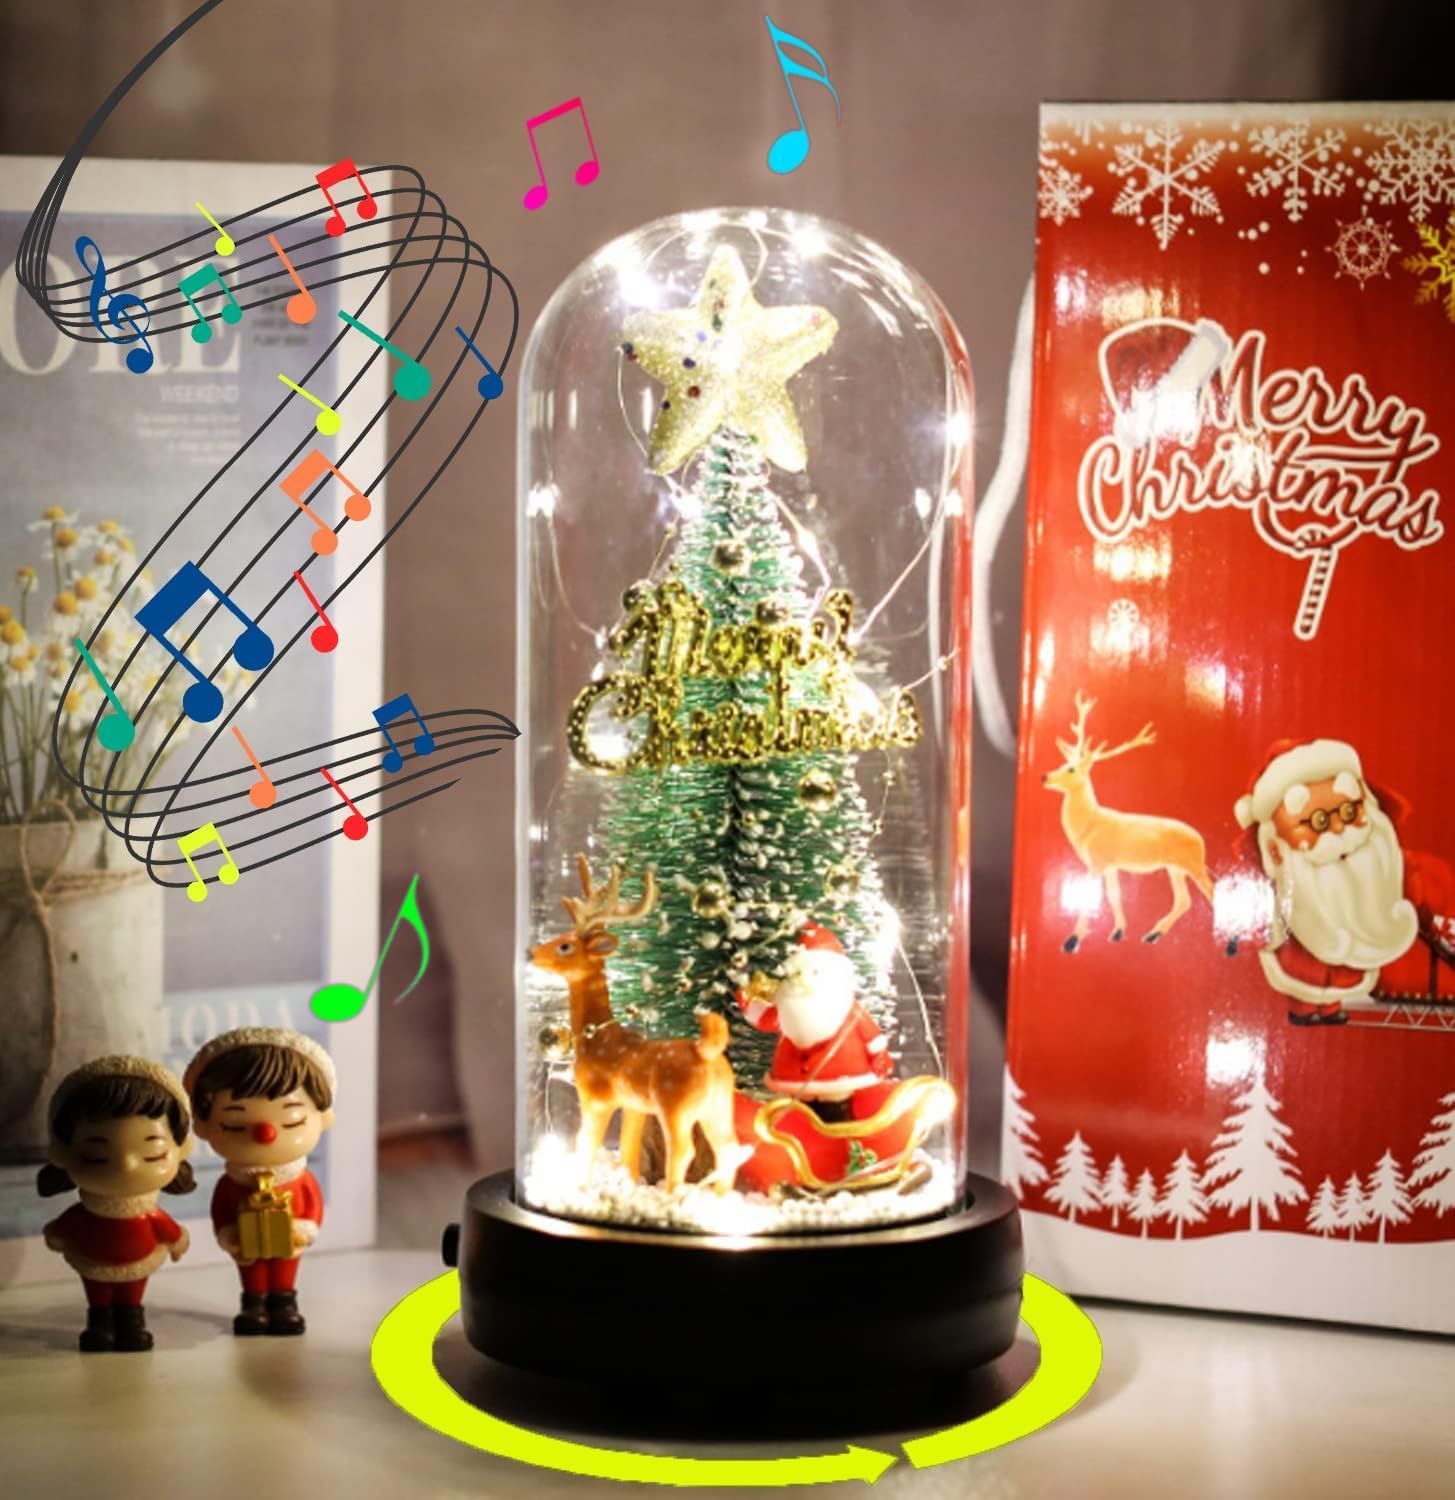 クリスマスツリー クリスマスソングミュージック オルゴール - クリスマス